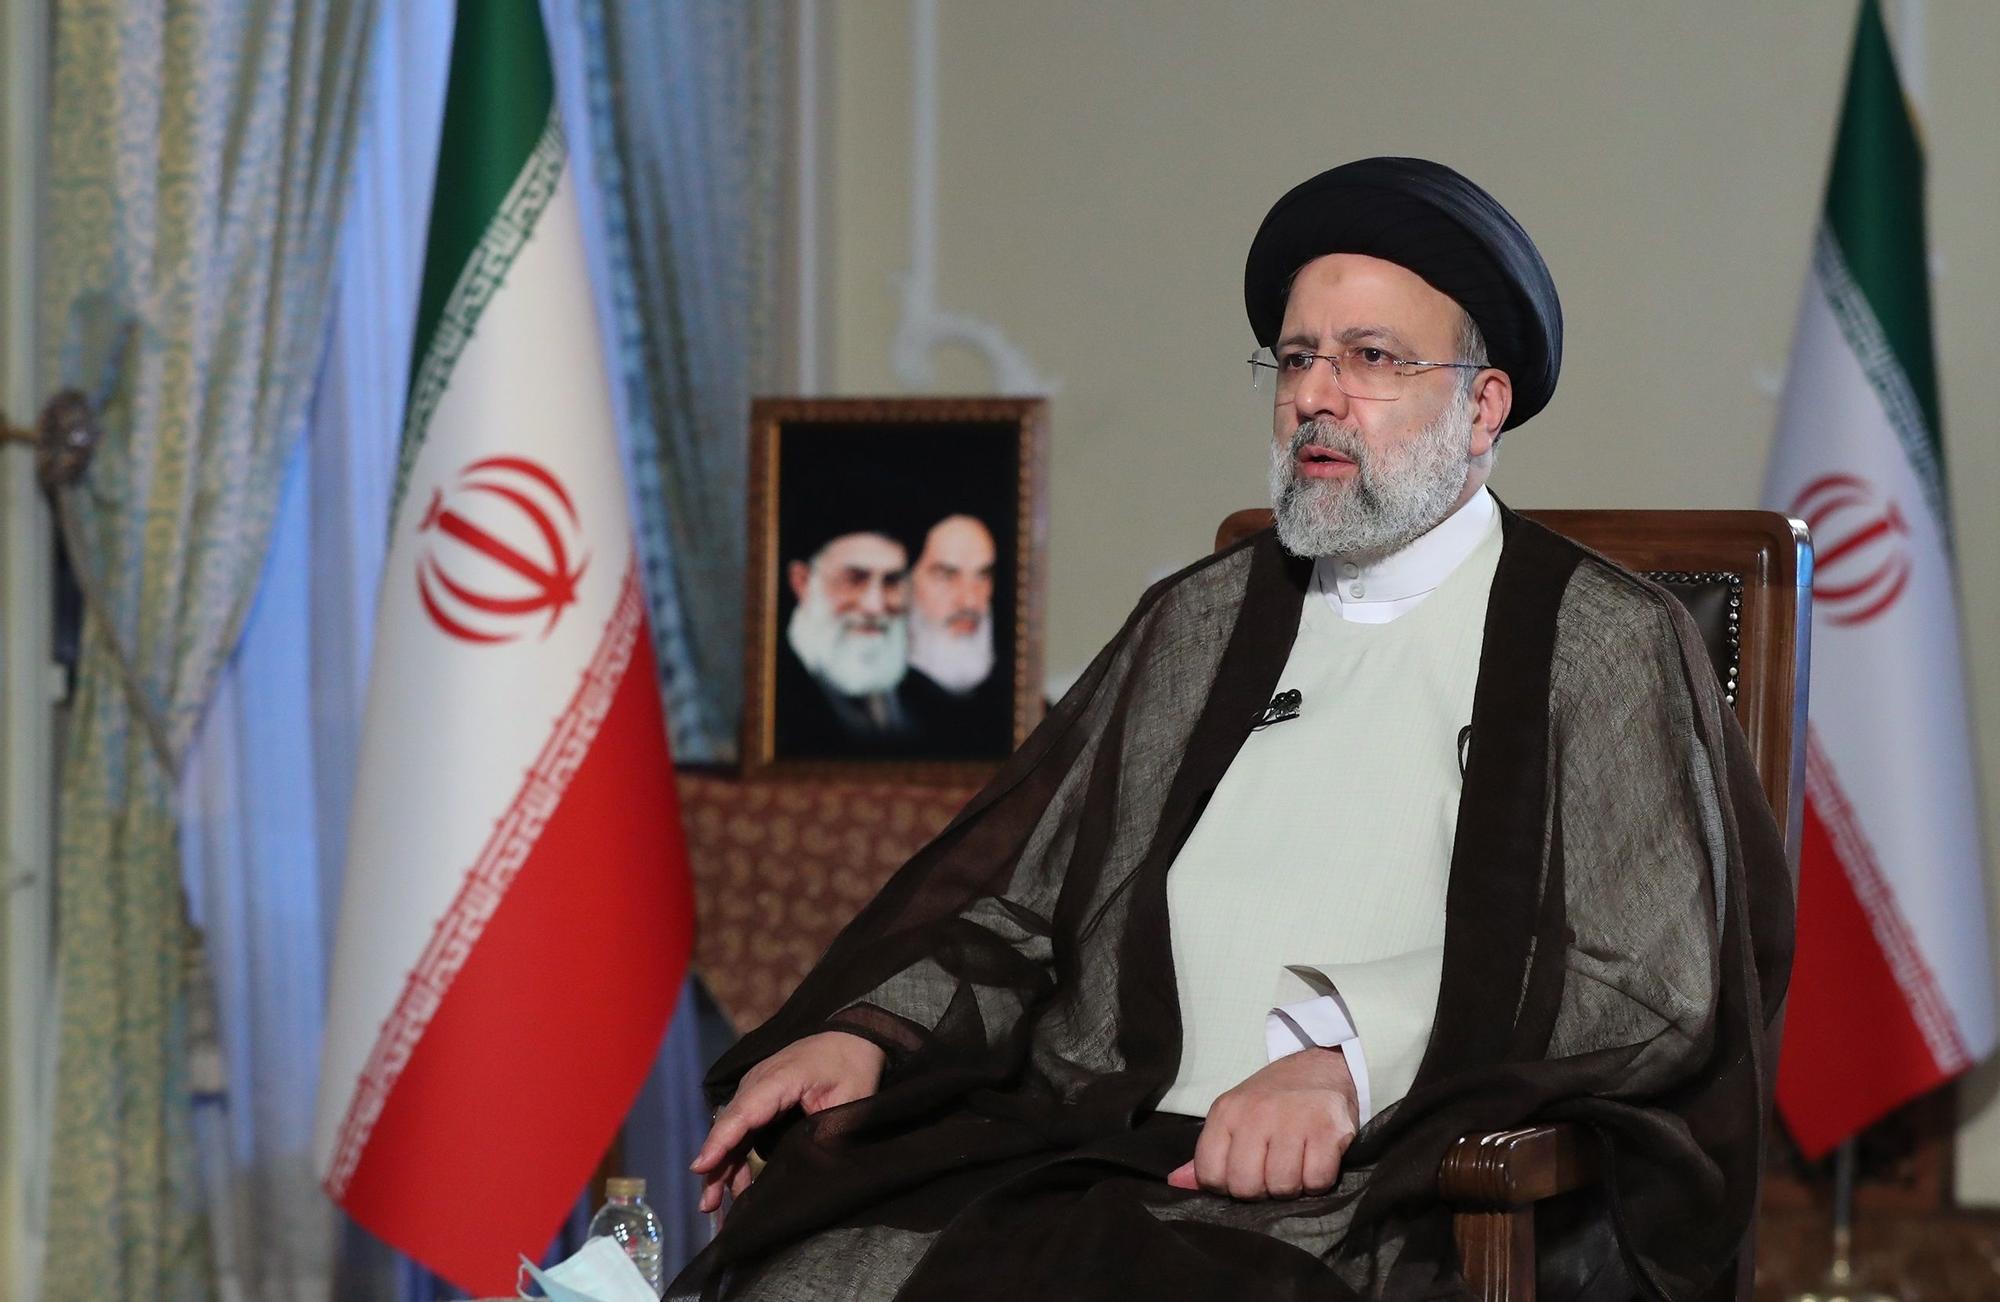 El presidente iraní Ebrahim Raisi hablando durante una entrevista televisiva en vivo en Teherán.